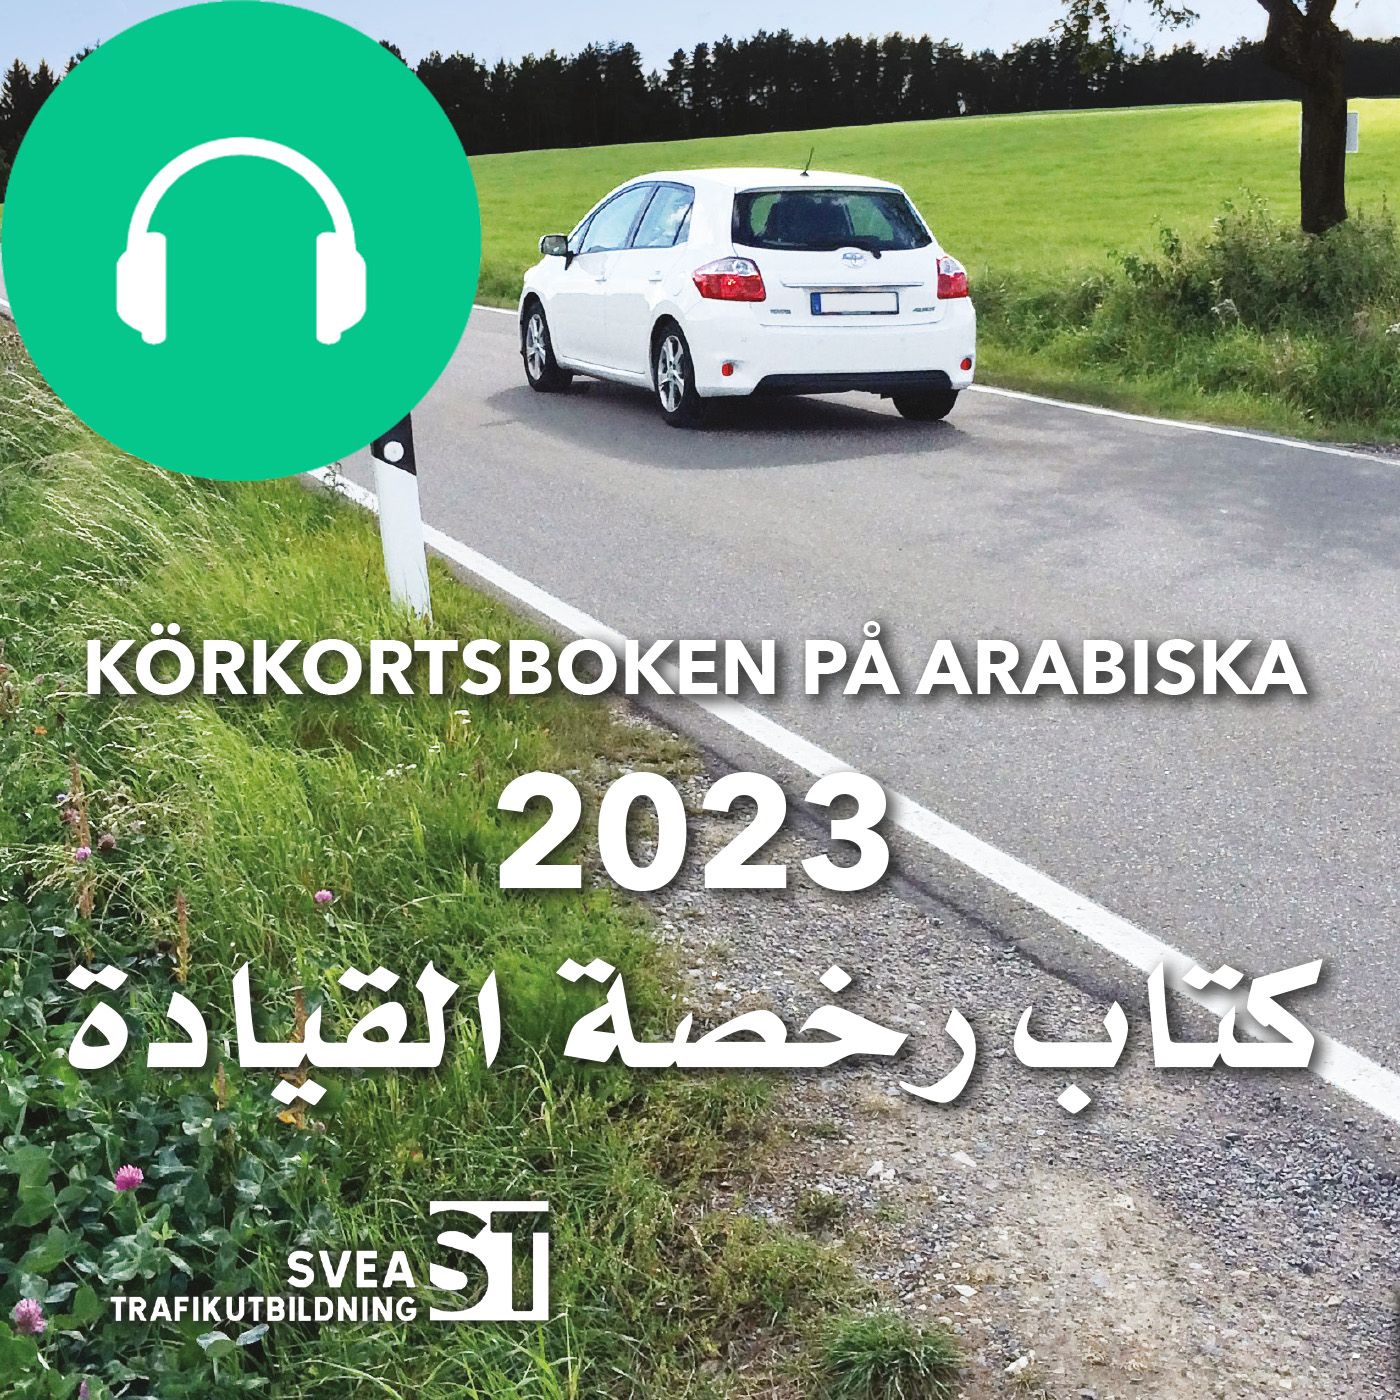 Körkortsboken på Arabiska 2023, audiobook by Svea Trafikutbildning